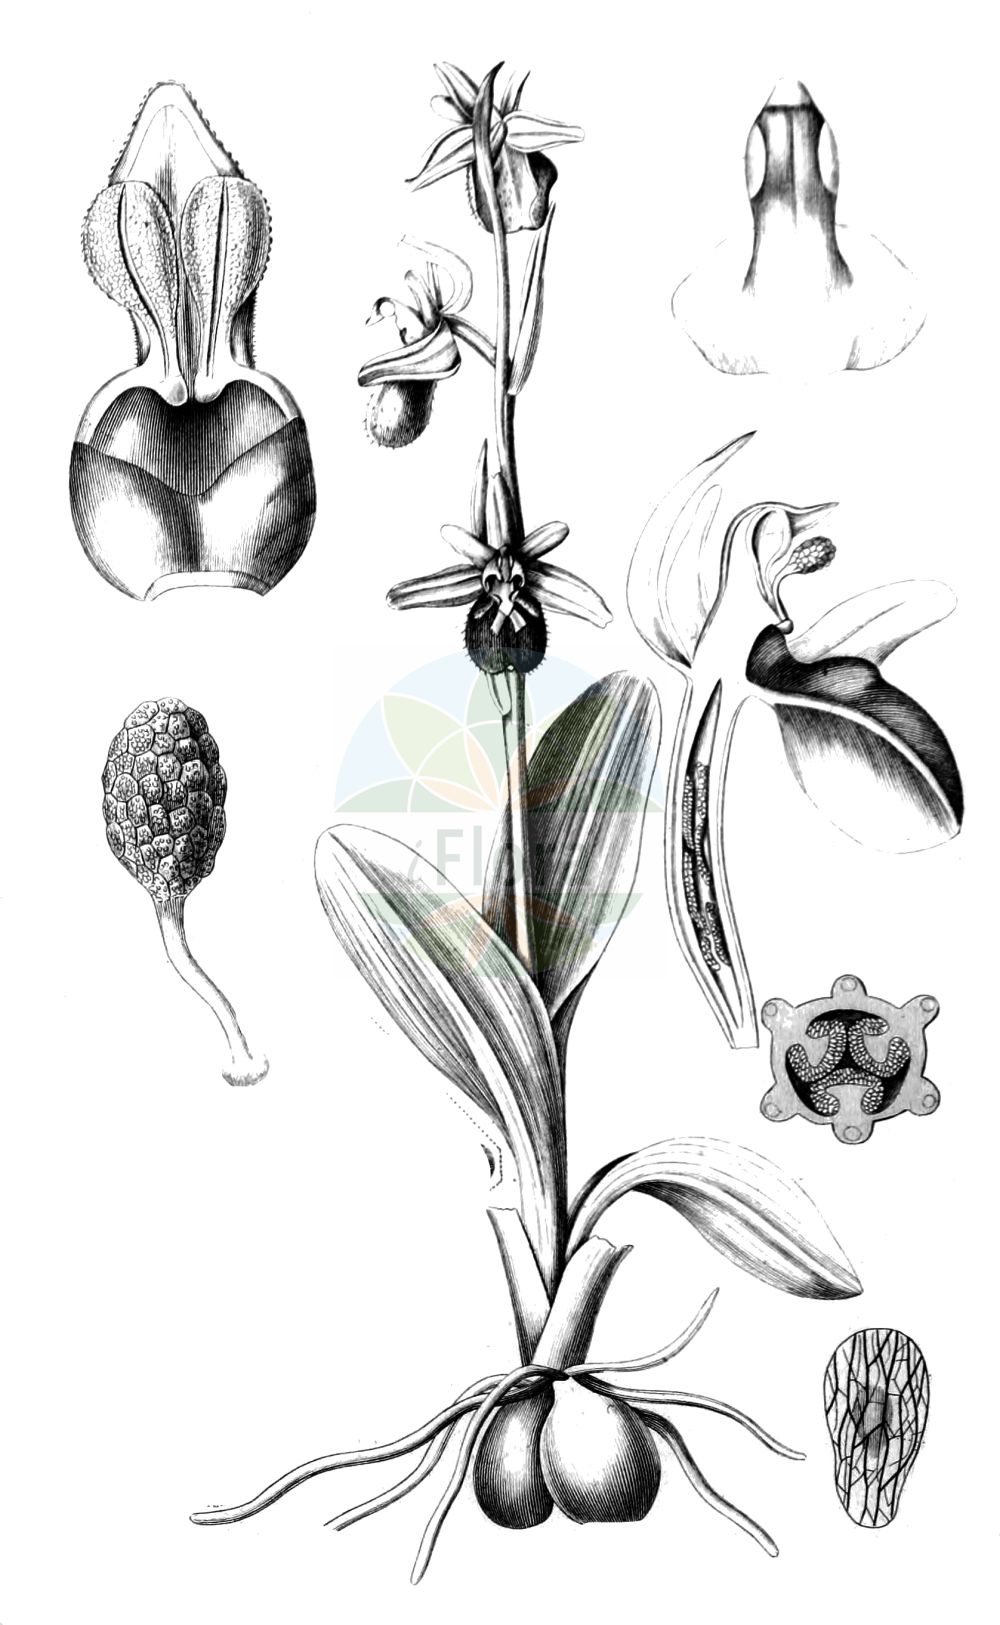 Historische Abbildung von Ophrys sphegodes (Echte Spinnen-Ragwurz - Early Spider-orchid). Das Bild zeigt Blatt, Bluete, Frucht und Same. ---- Historical Drawing of Ophrys sphegodes (Echte Spinnen-Ragwurz - Early Spider-orchid). The image is showing leaf, flower, fruit and seed.(Ophrys sphegodes,Echte Spinnen-Ragwurz,Early Spider-orchid,Ophrys sphegodes,Echte Spinnen-Ragwurz,Spinnen-Ragwurz,Early Spider-orchid,Ophrys,Ragwurz,Bee Orchid,Orchidaceae,Knabenkrautgewächse,Orchid family,Blatt,Bluete,Frucht,Same,leaf,flower,fruit,seed,Spach (1834-1847))